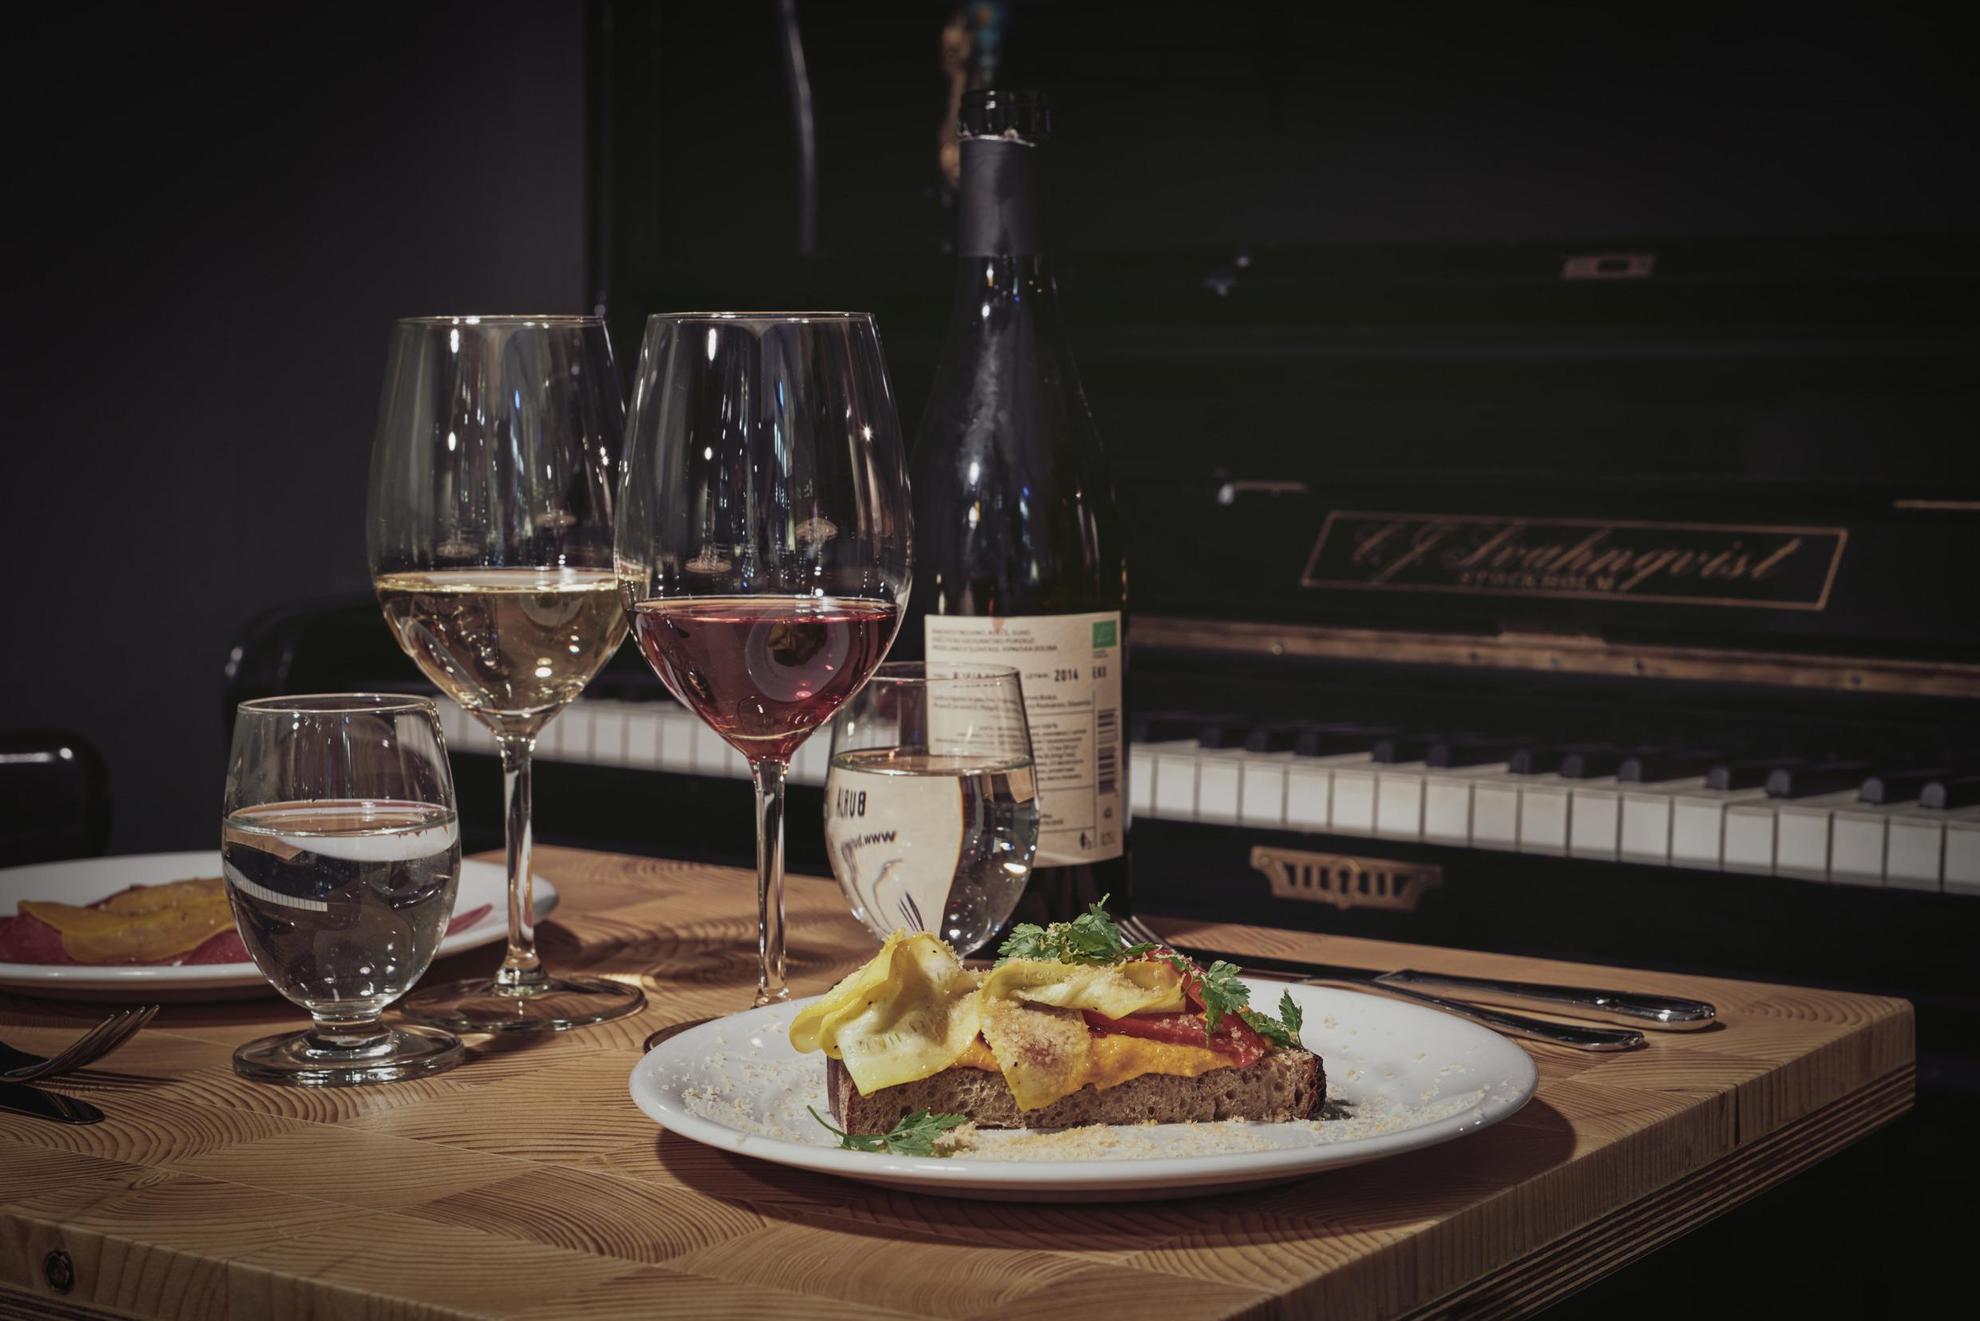 Ein gedeckter Tisch mit einer Weinflasche, zwei Tellern mit Essen und zwei Weingläsern. Der Tisch steht neben einem Klavier.